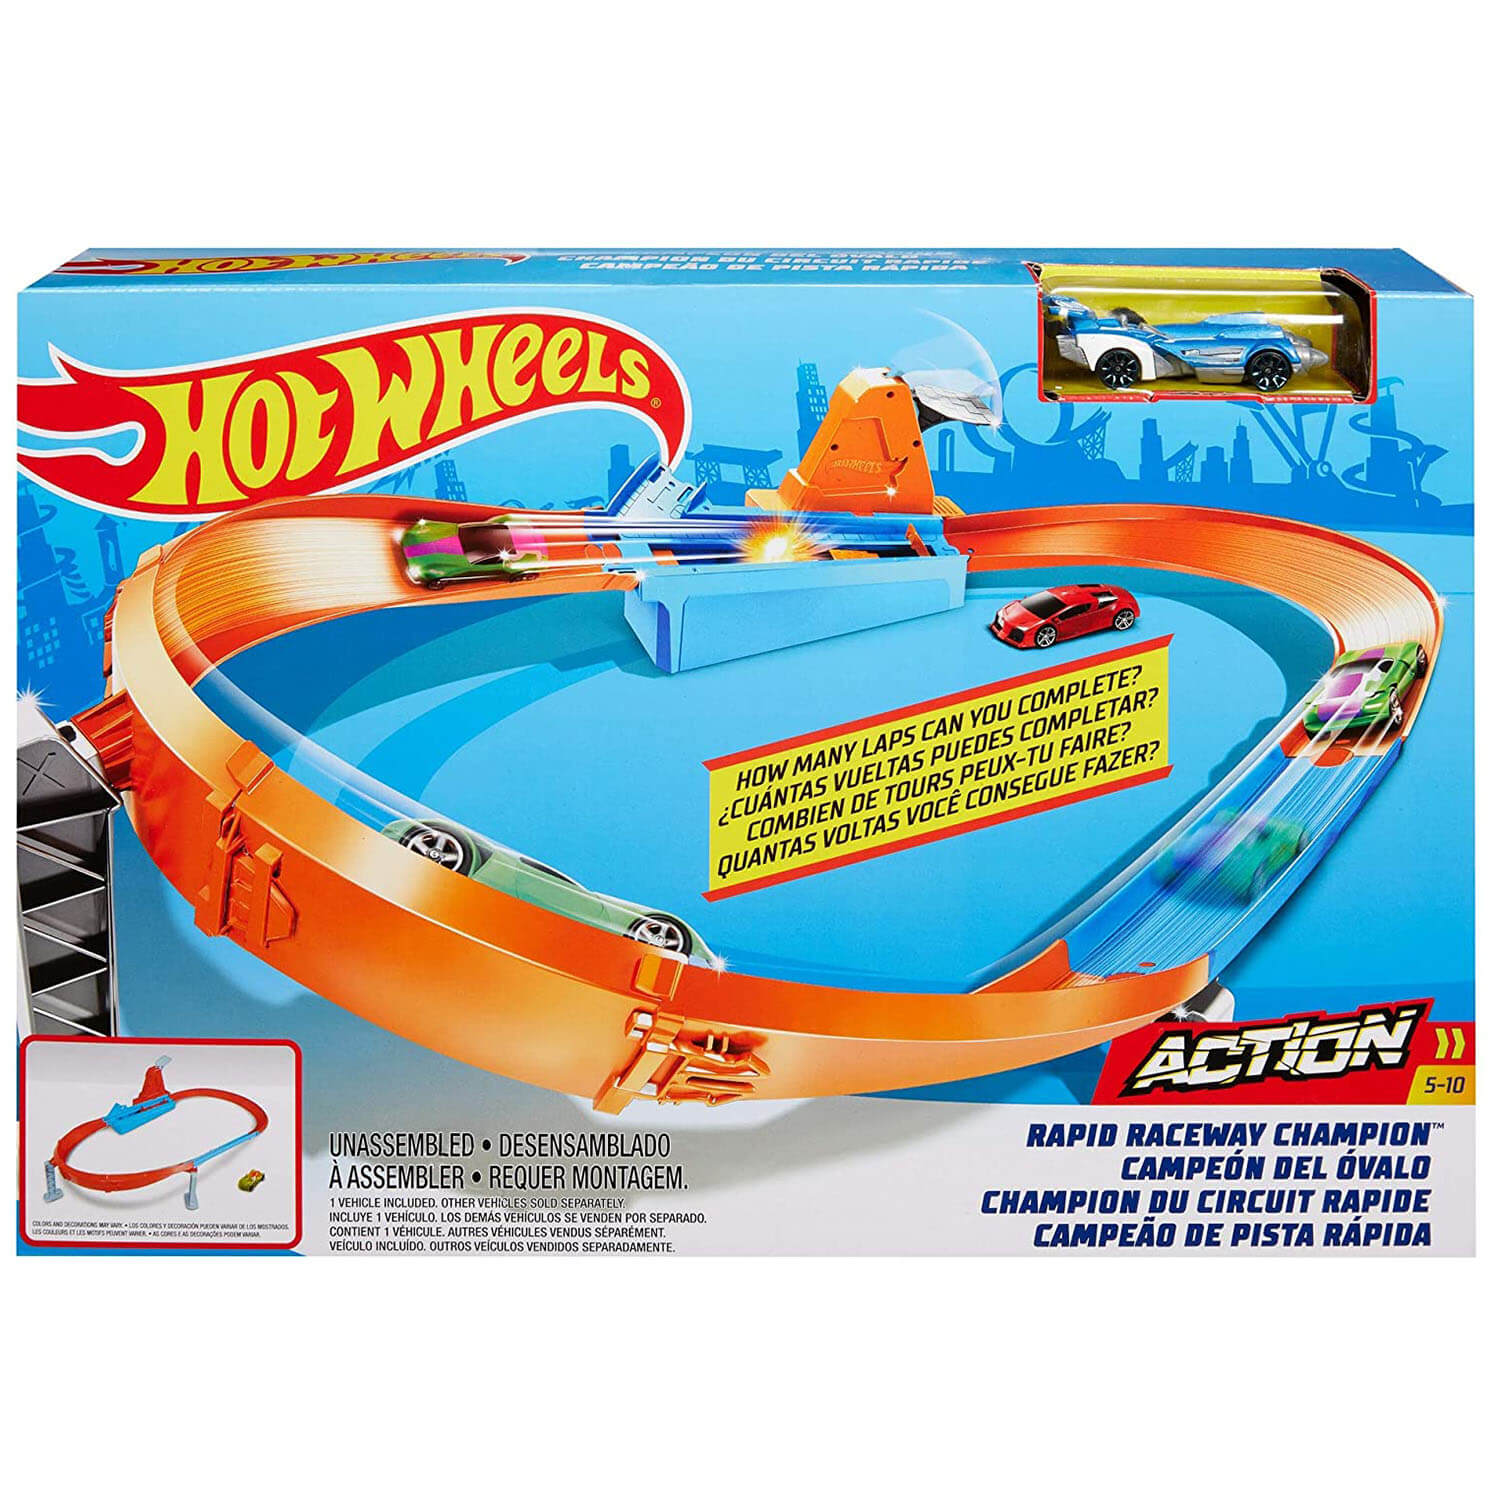 Pista Hot Wheels Action Desafio de Voltas - Mattel - A sua Loja de